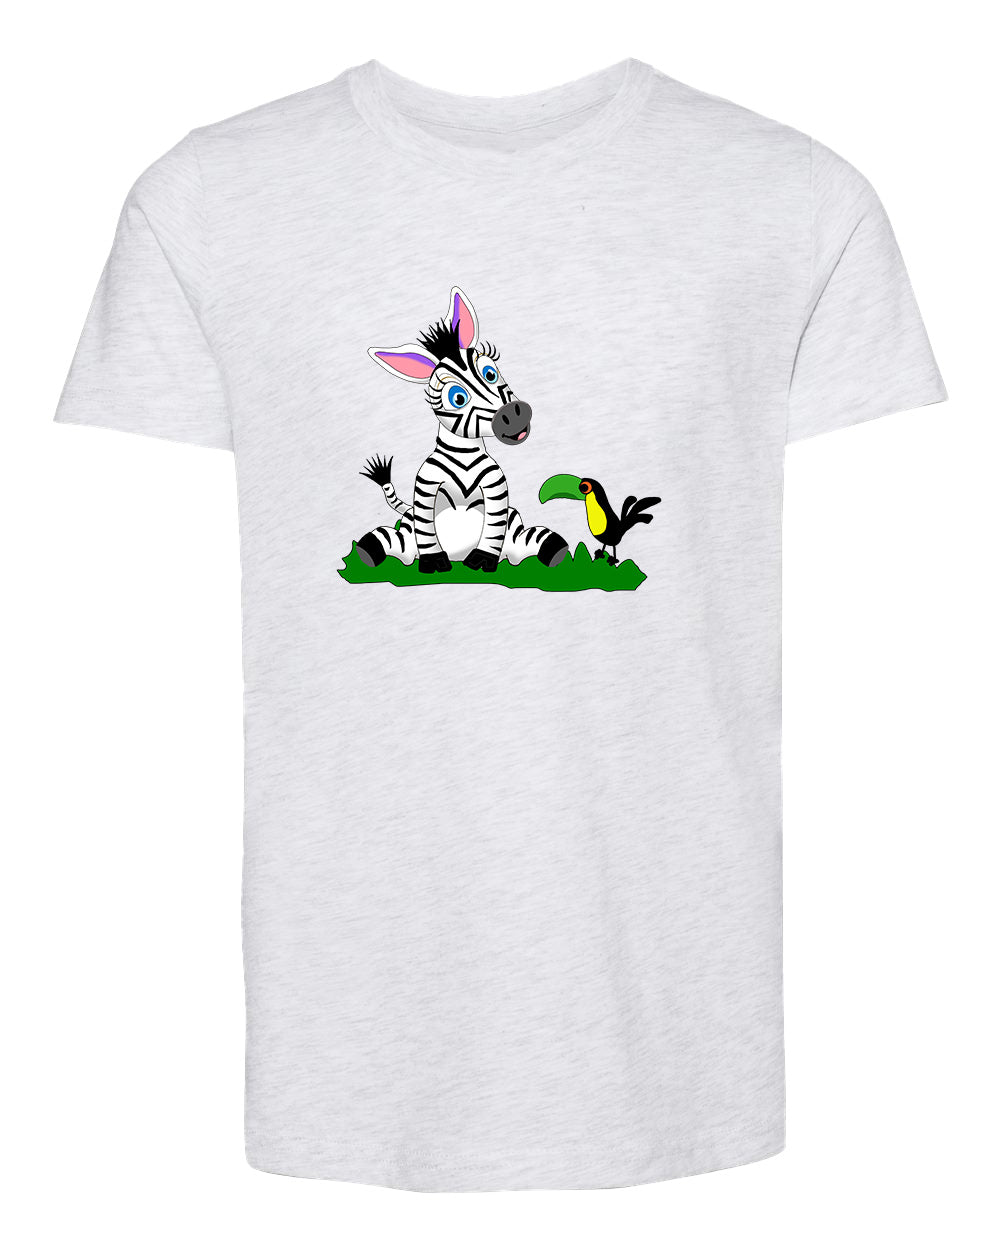 Zebra Kid's T-shirt